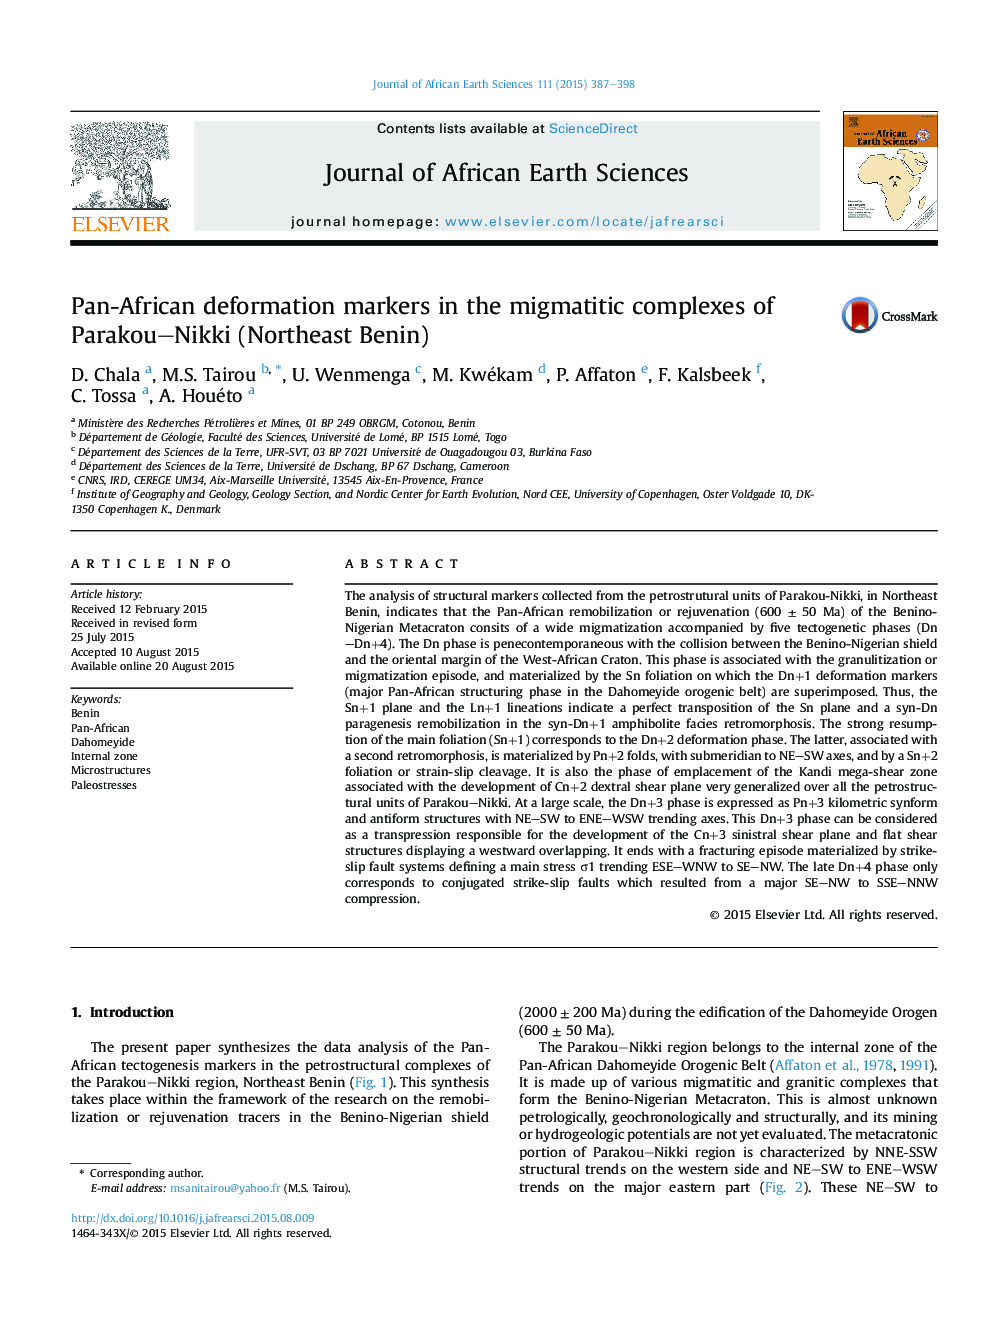 Pan-African deformation markers in the migmatitic complexes of Parakou–Nikki (Northeast Benin)